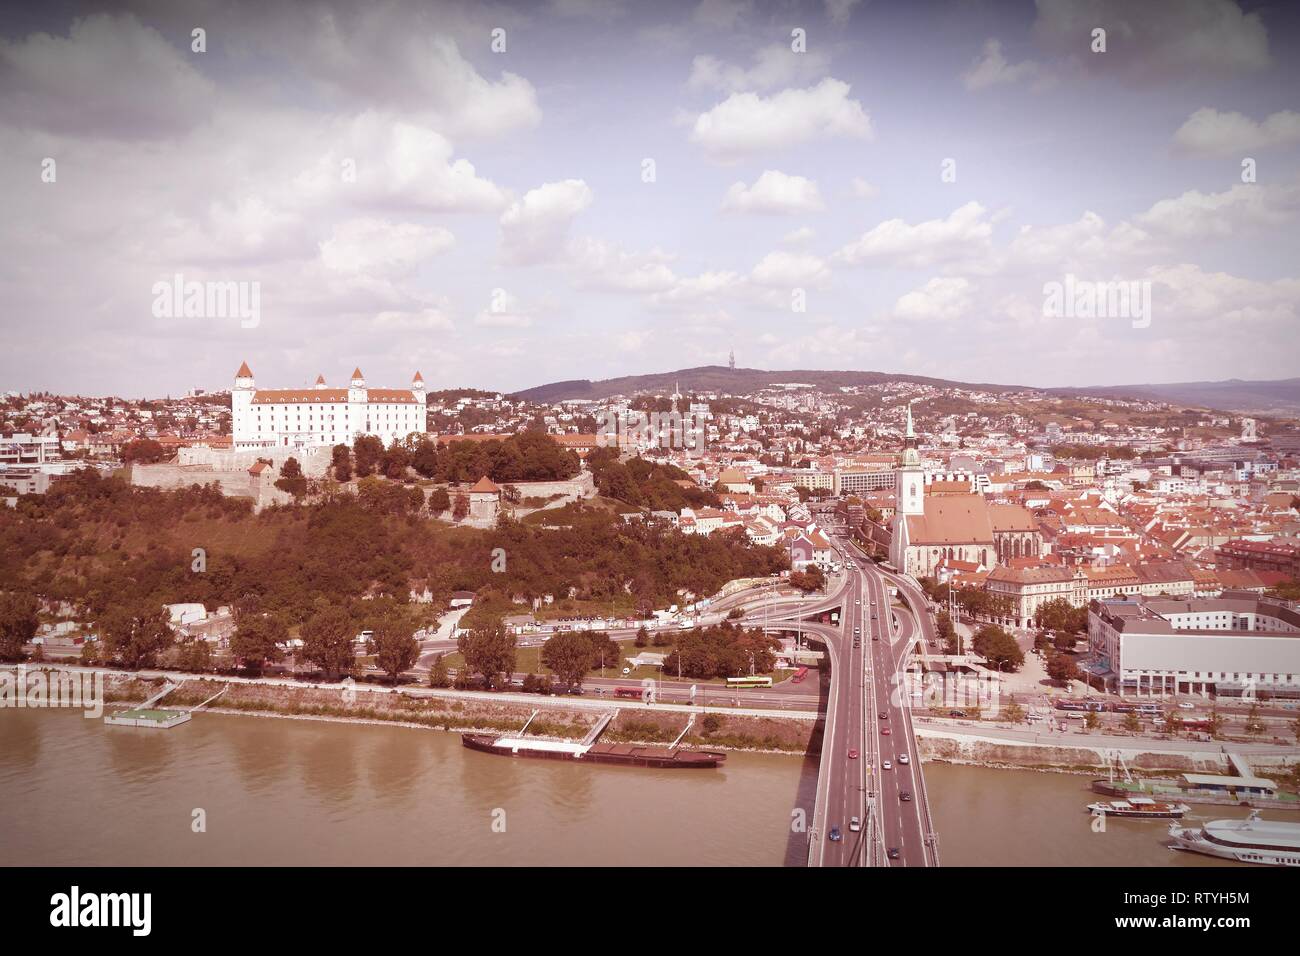 Bratislava, Hauptstadt der Slowakei. Stadtbild mit Donau Brücke, das Schloss und die alte Architektur. Querbearbeitung Farbton - gefilterte r Stockfoto